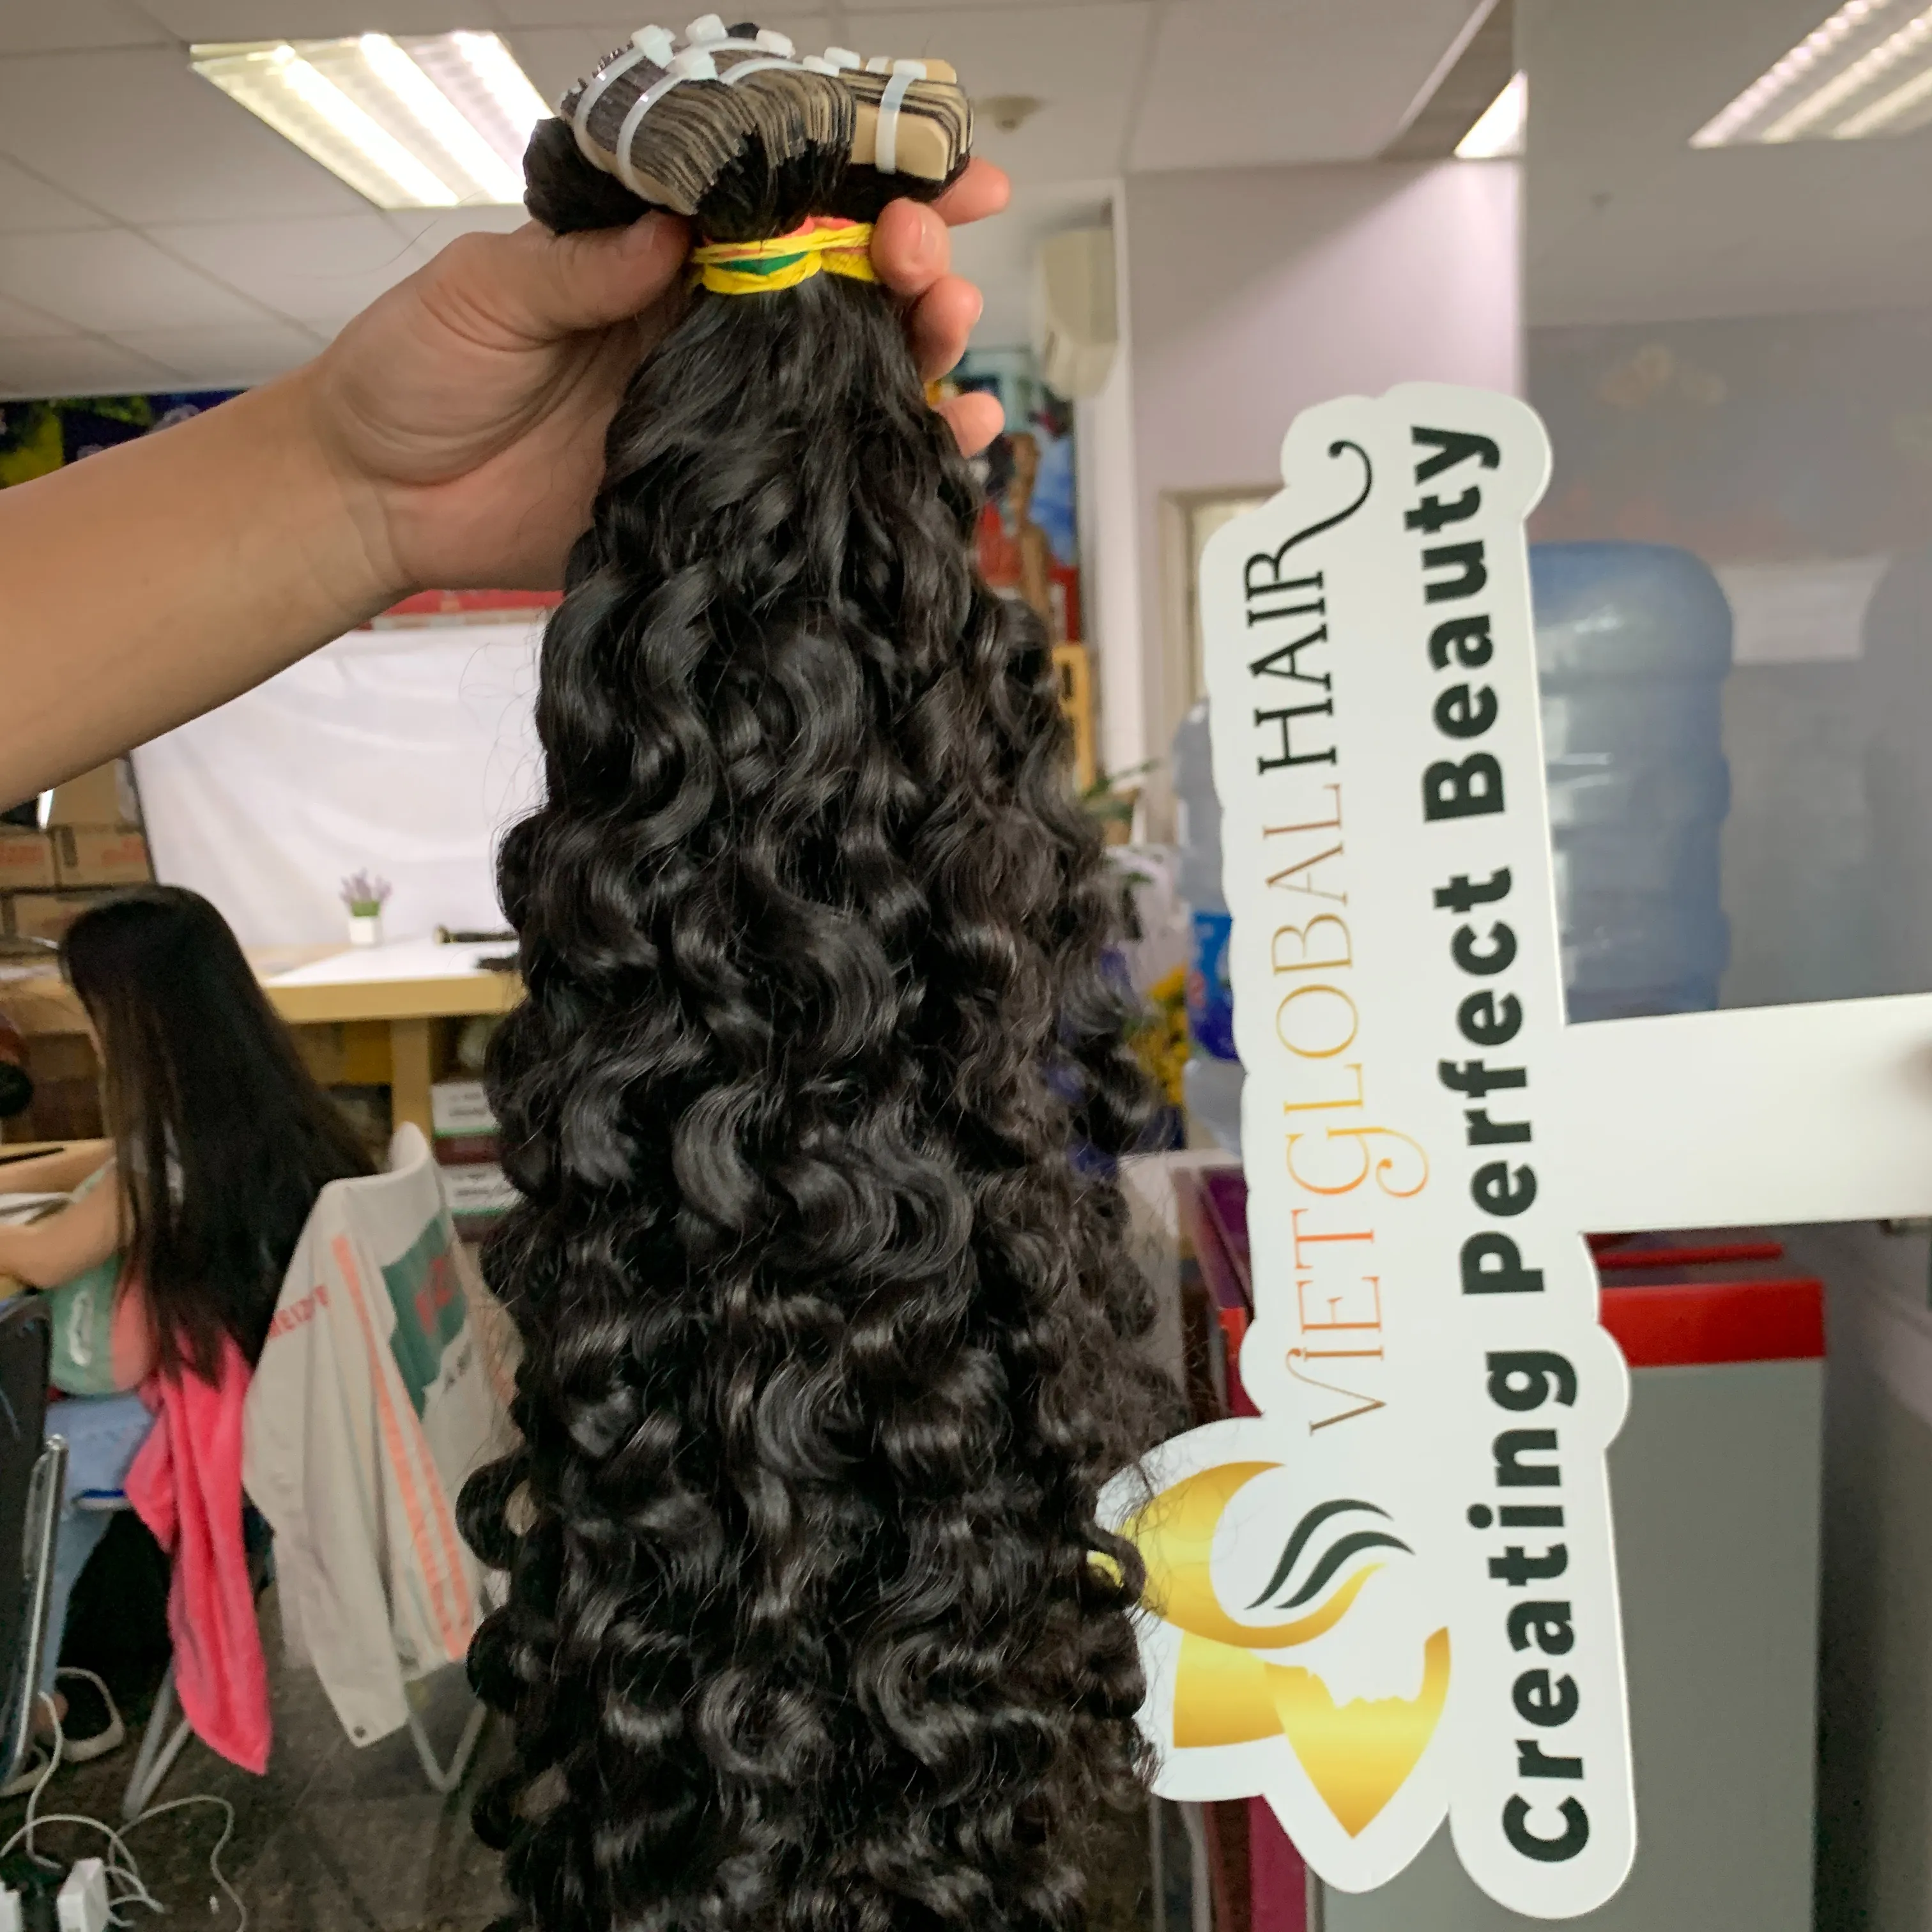 Cinta rizada birmana en el cabello El producto más vendido Todos los tamaños Colores Cabello crudo natural de niñas vietnamitas